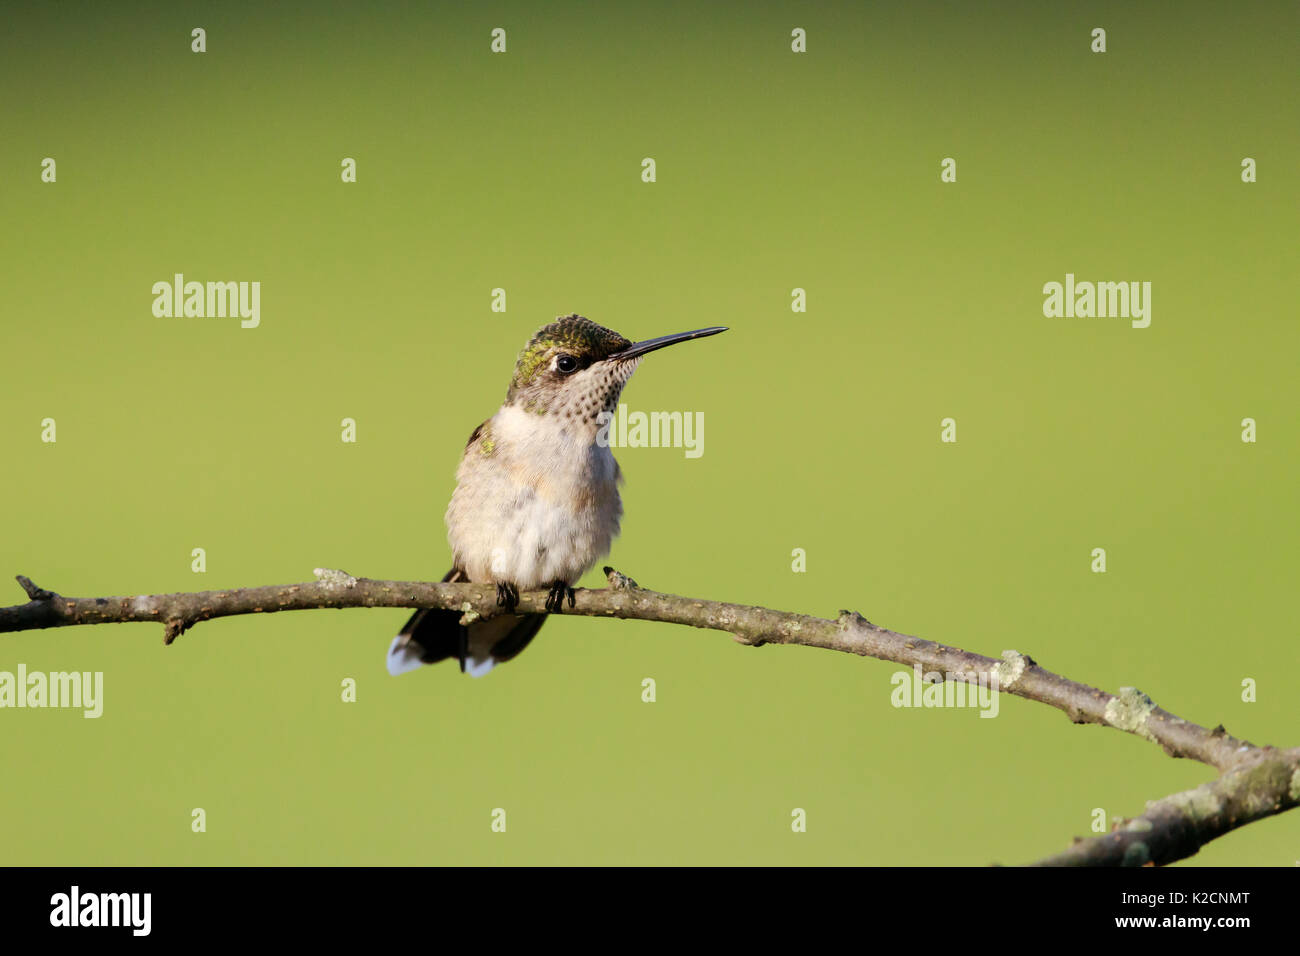 Femmina di Ruby-throated hummingbird, archilochus colubris, appollaiato su un ramo guardando a sinistra verso il visualizzatore, girato dalla sua parte anteriore. Foto Stock